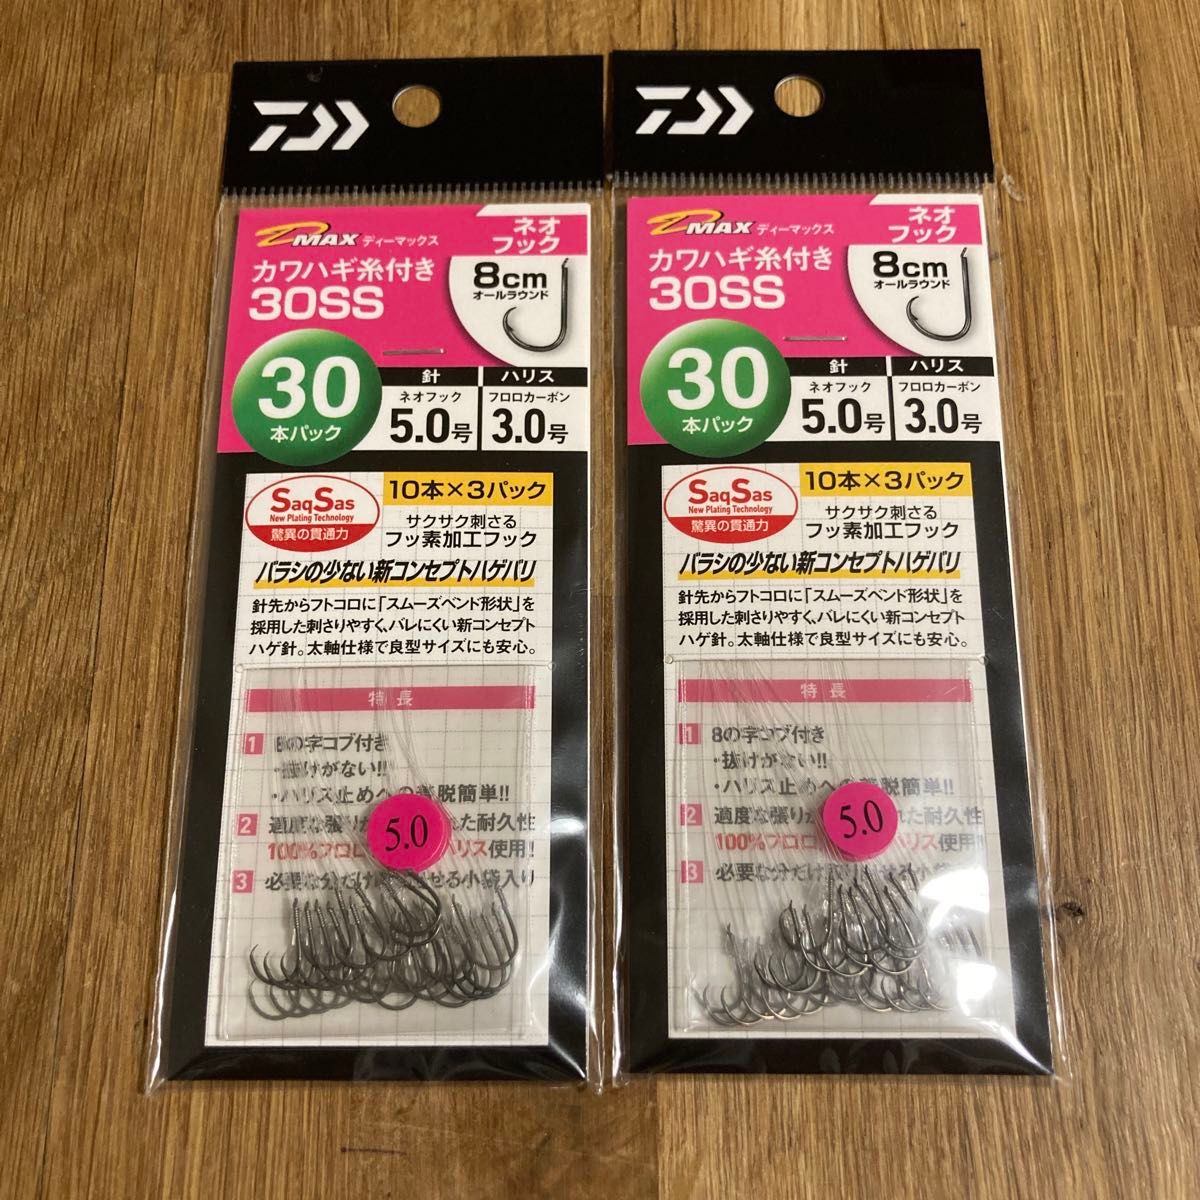 ダイワ カワハギ糸付き30SS 2個セット No.15